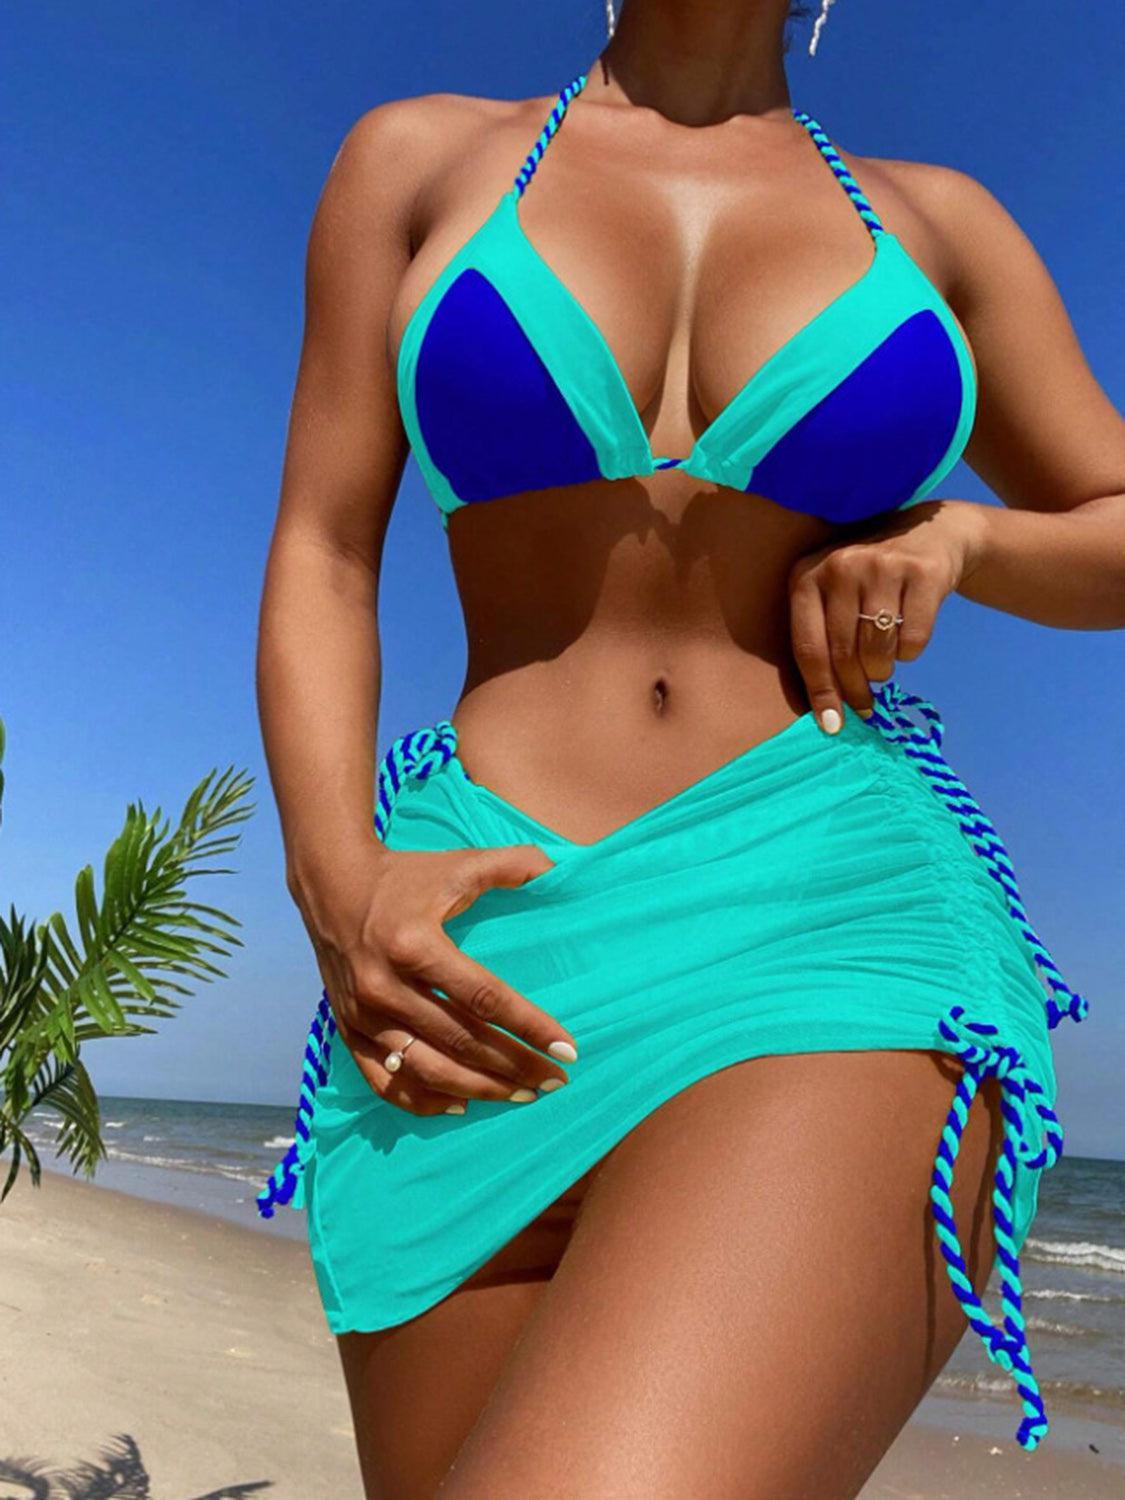 a woman in a blue bikini on the beach